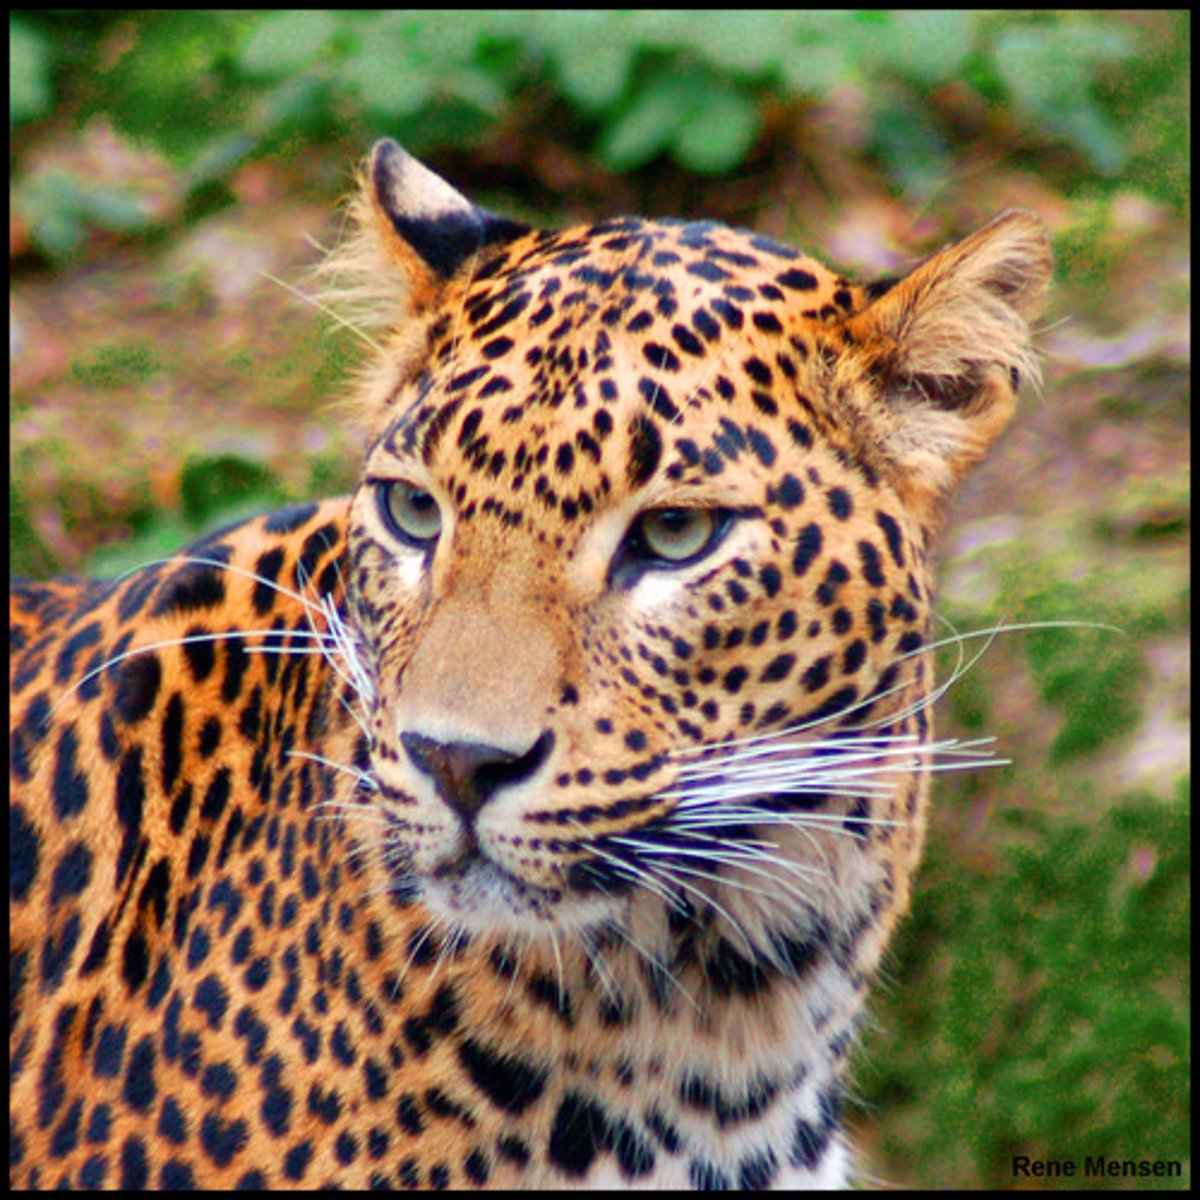 <p>jaguar</p>